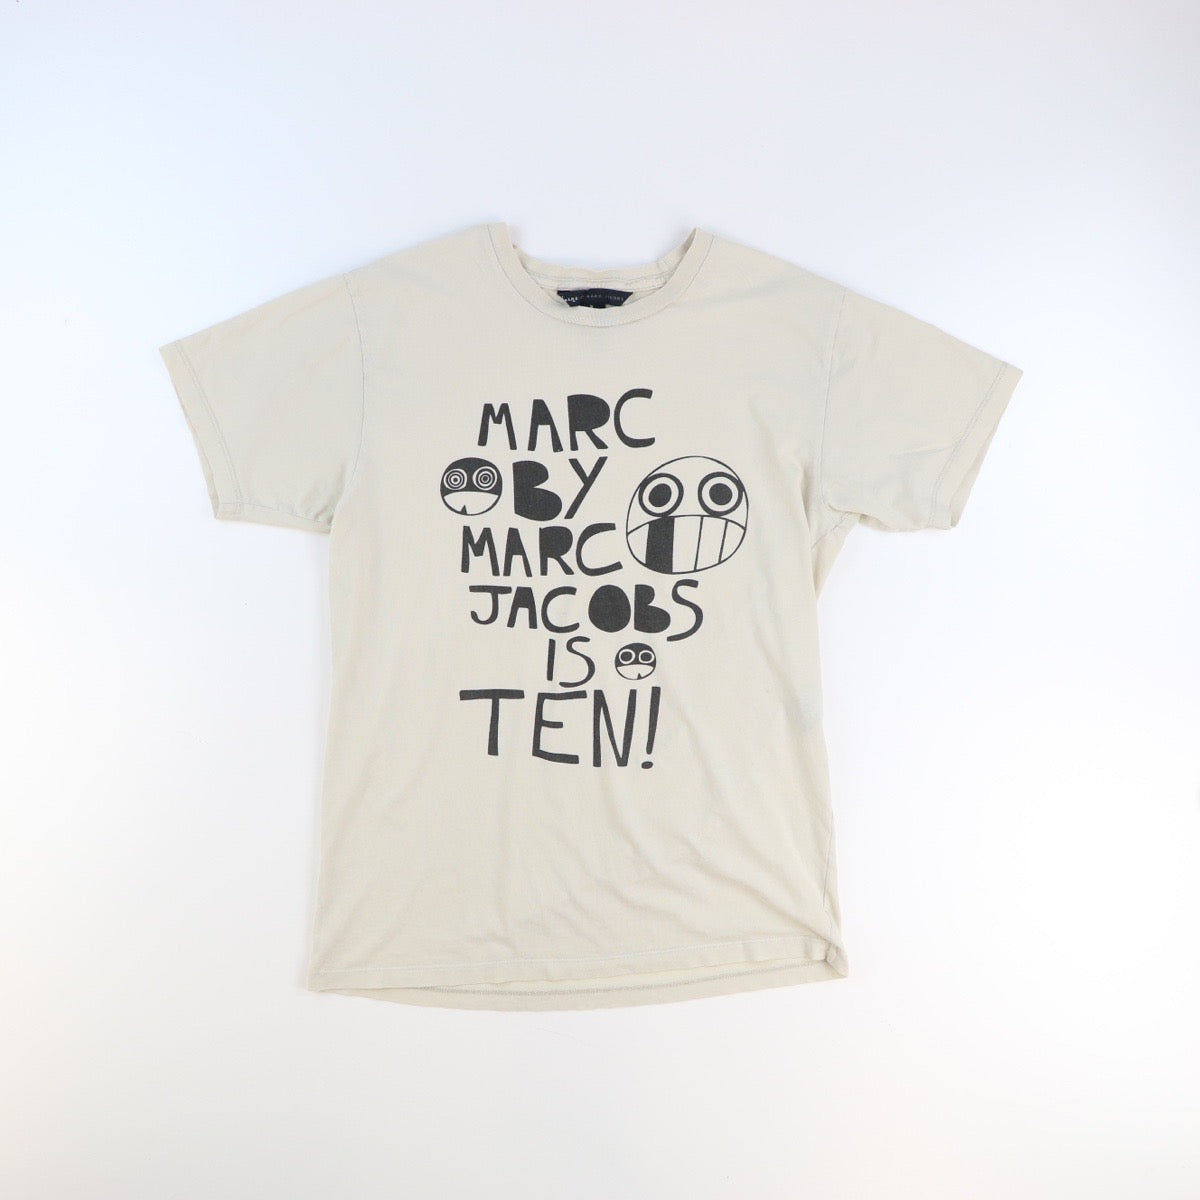 Marc Jacobs T shirt (S)